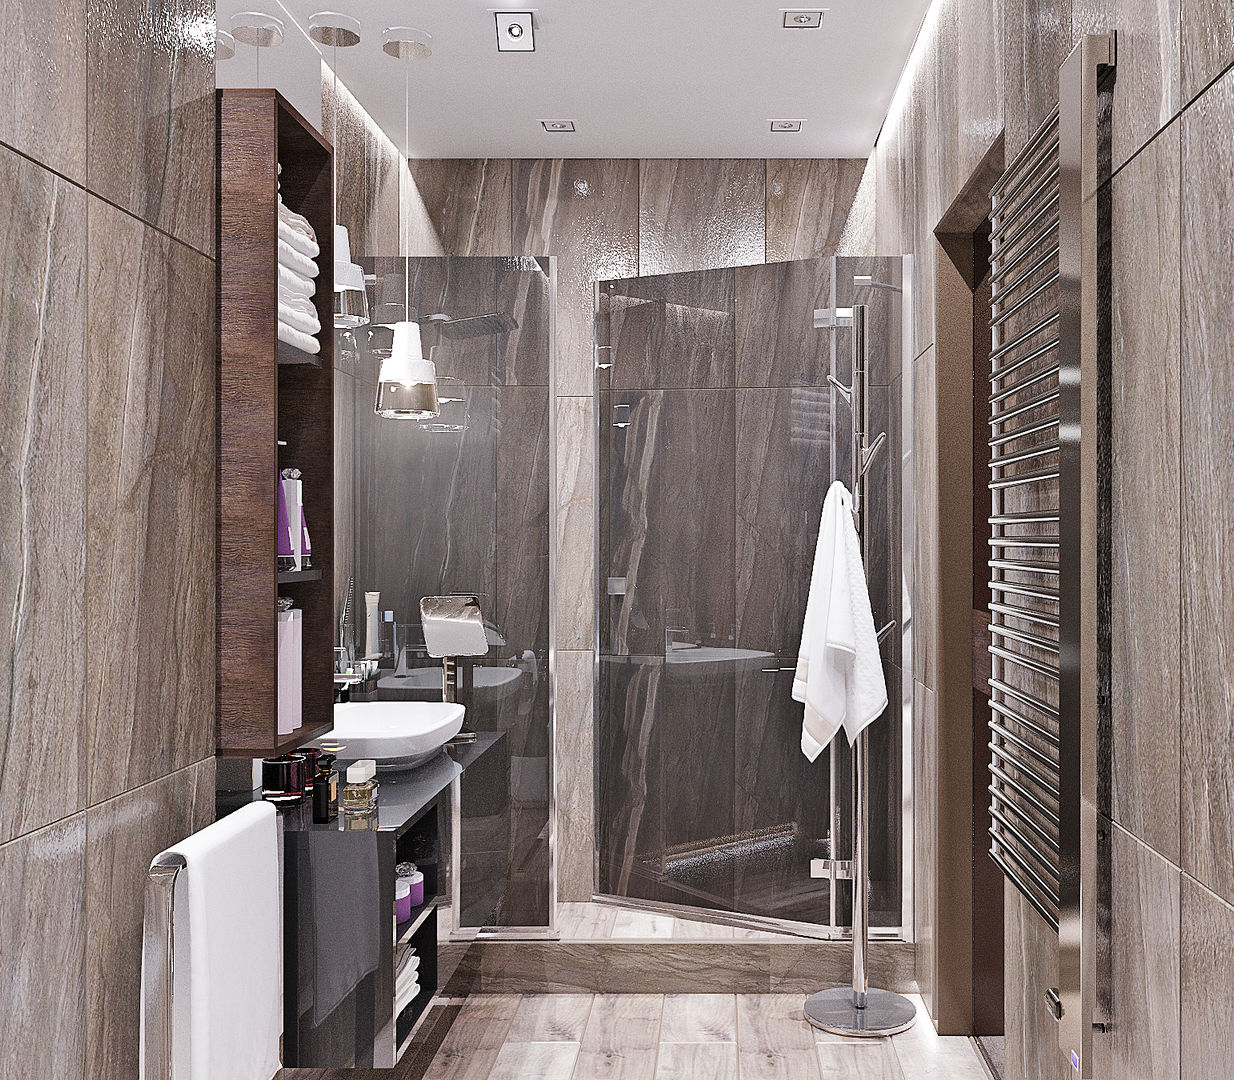 Ванная комната в стиле минимализм, Студия дизайна ROMANIUK DESIGN Студия дизайна ROMANIUK DESIGN Baños industriales